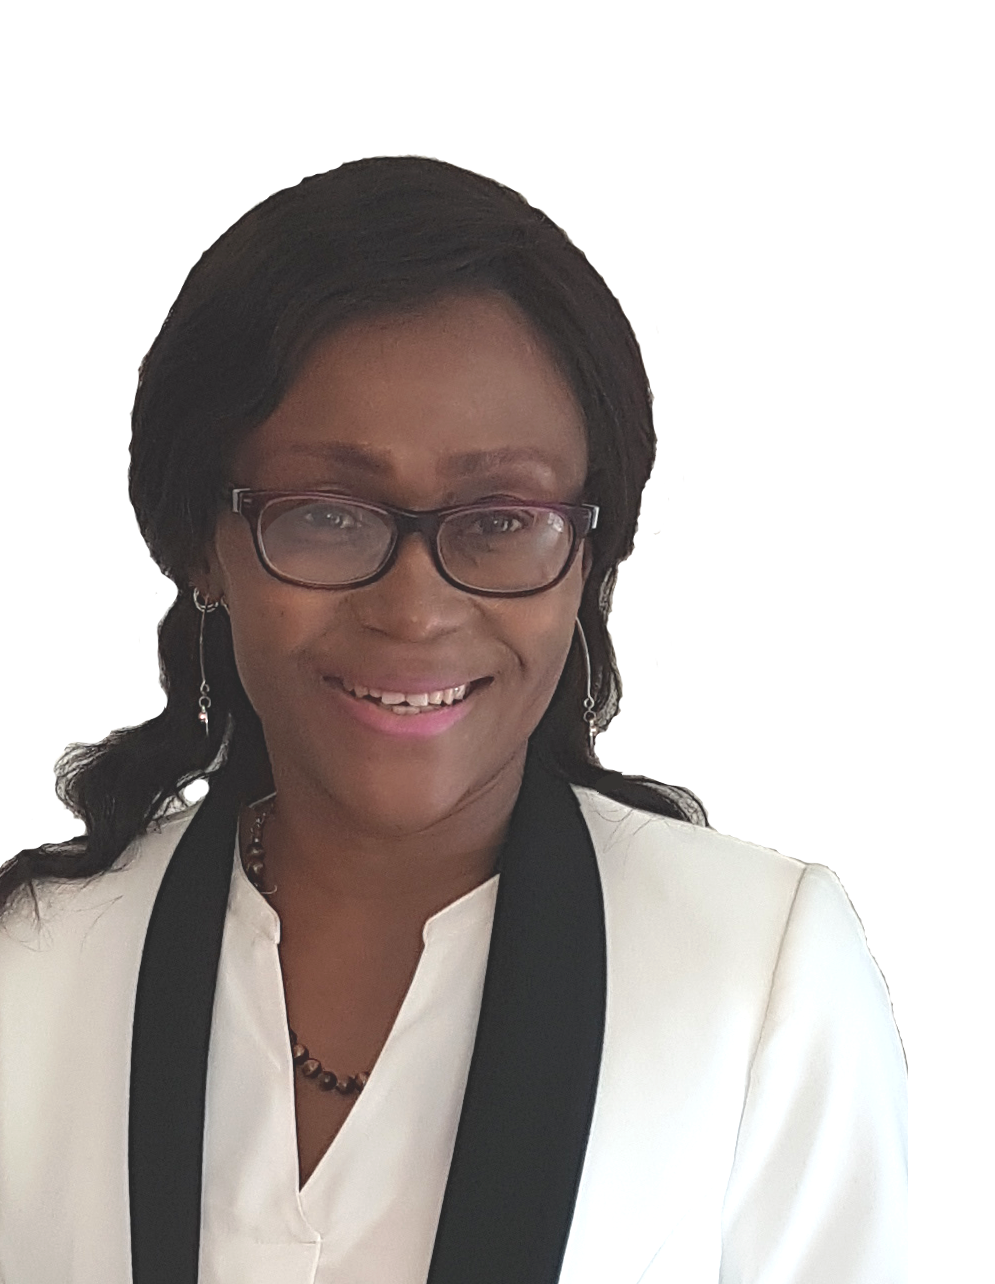 Christine Bekono Mindja - Christine Bories: Consultante en Bien-être et Santé, développement du potentiel humain, développement personnel, relations humaines depuis plusieurs années. Je peux vous conseiller, vous orienter ou vous accompagner.